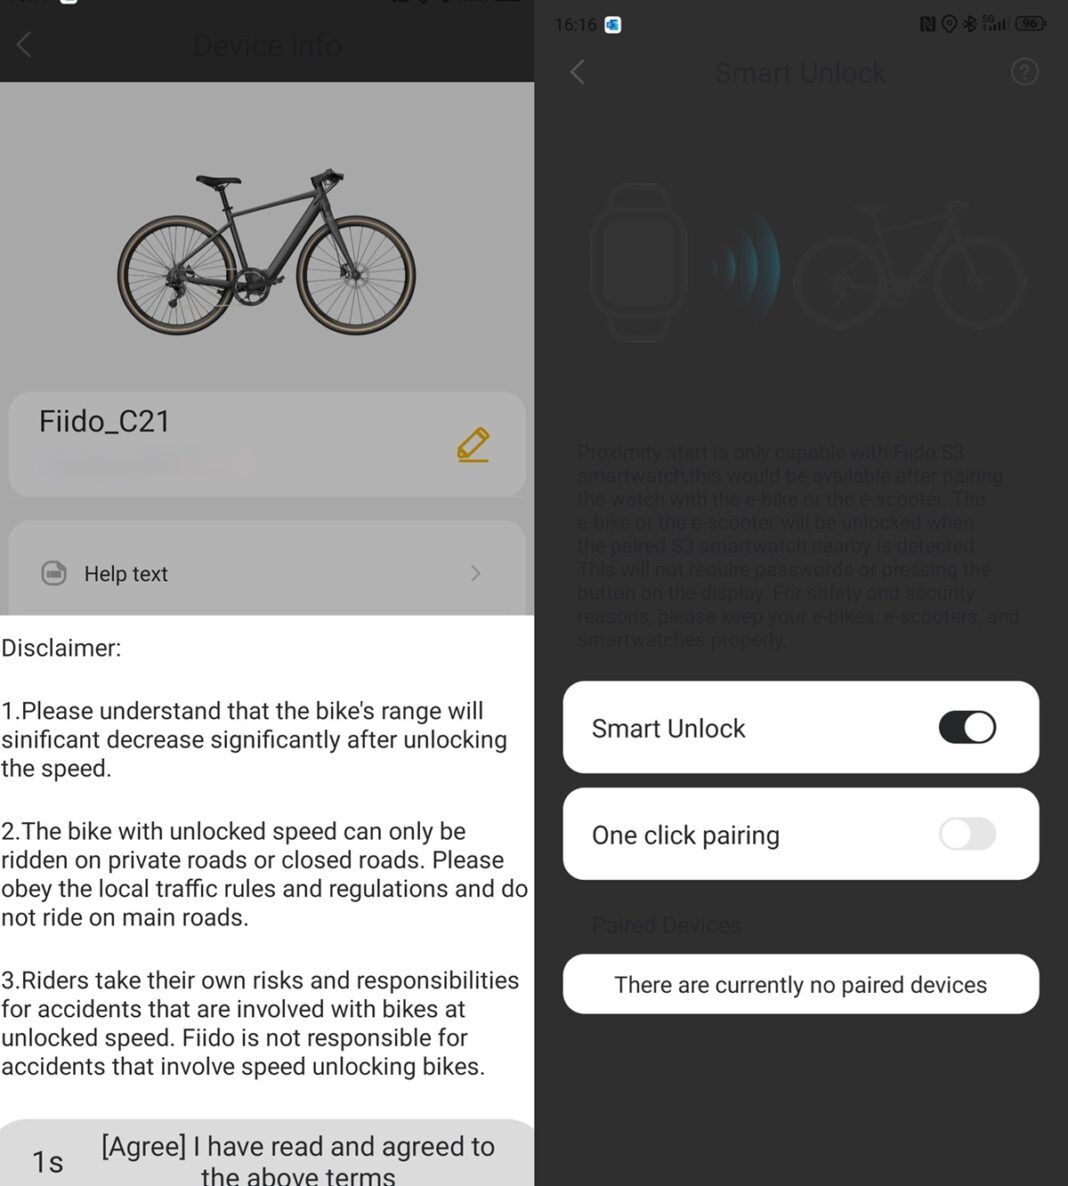 Fiido C21 la app permite desbloquear el limite de velocidad y el desbloqueo por la proximidad